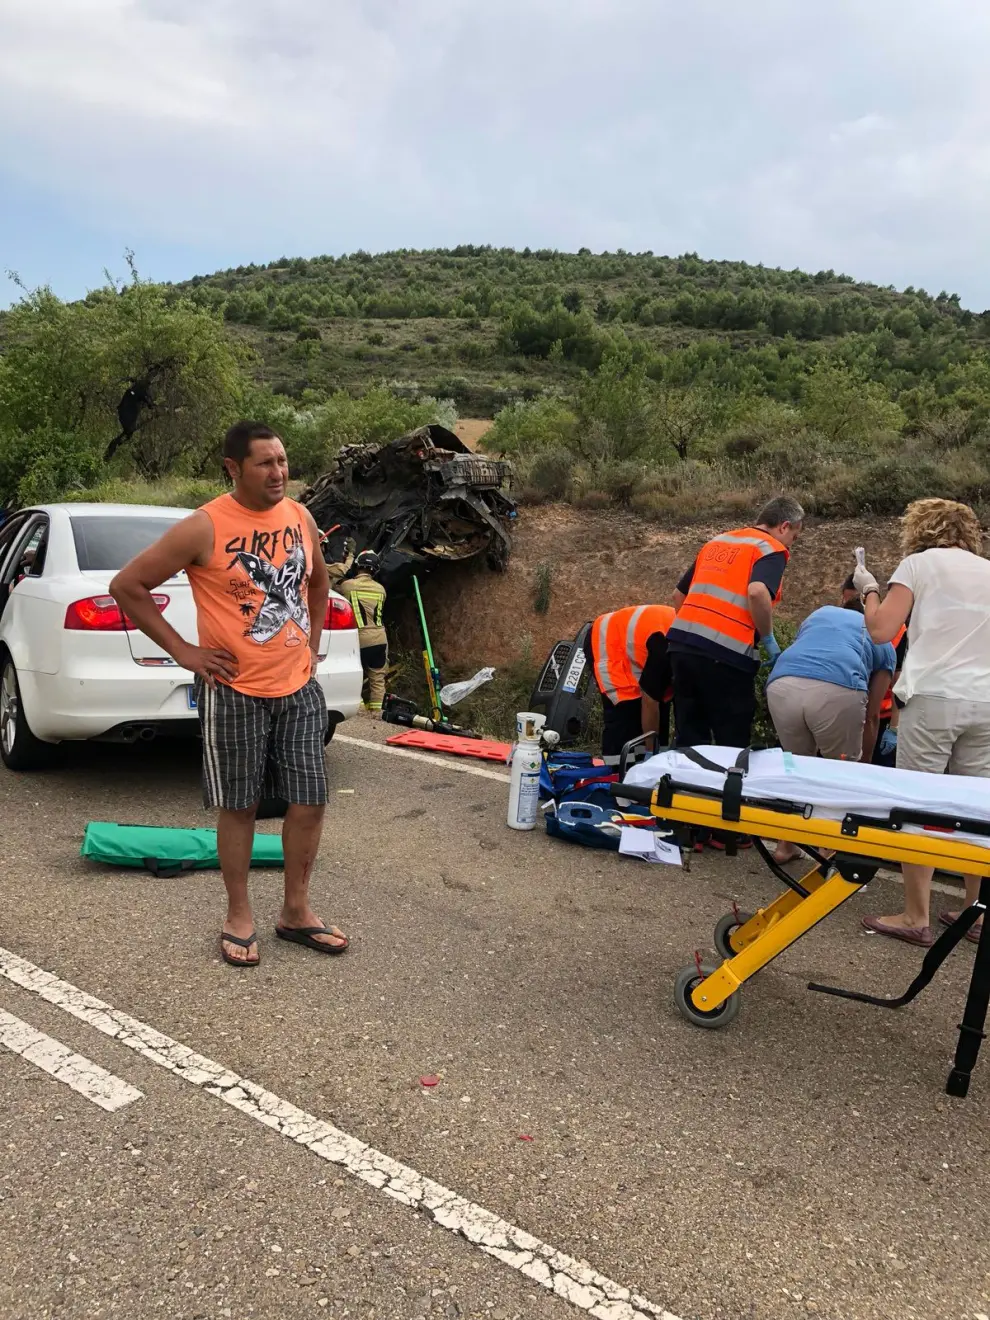 Imagen tomada ayer entre El Frasno y Sabiñán, donde se registró un accidente con dos víctimas mortales.